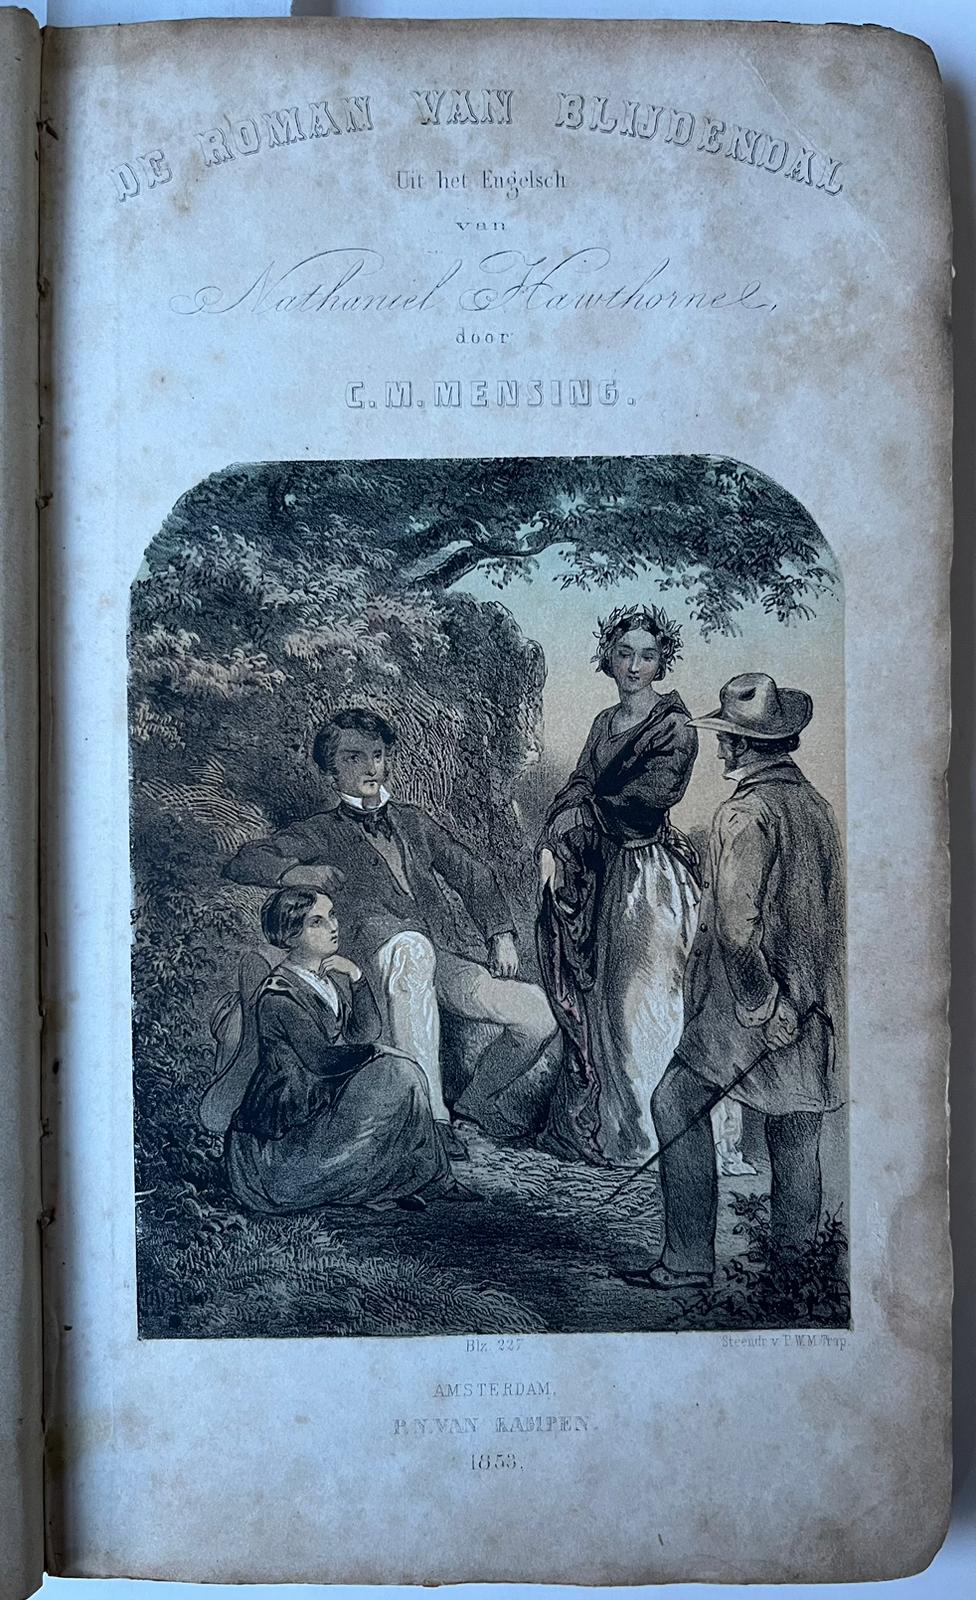 [Literature 1853] De roman van Blijdendal. Vertaald uit het Engels. Amsterdam, P.N. van Kampen, 1853, [2] 8, 265 [1] pp.